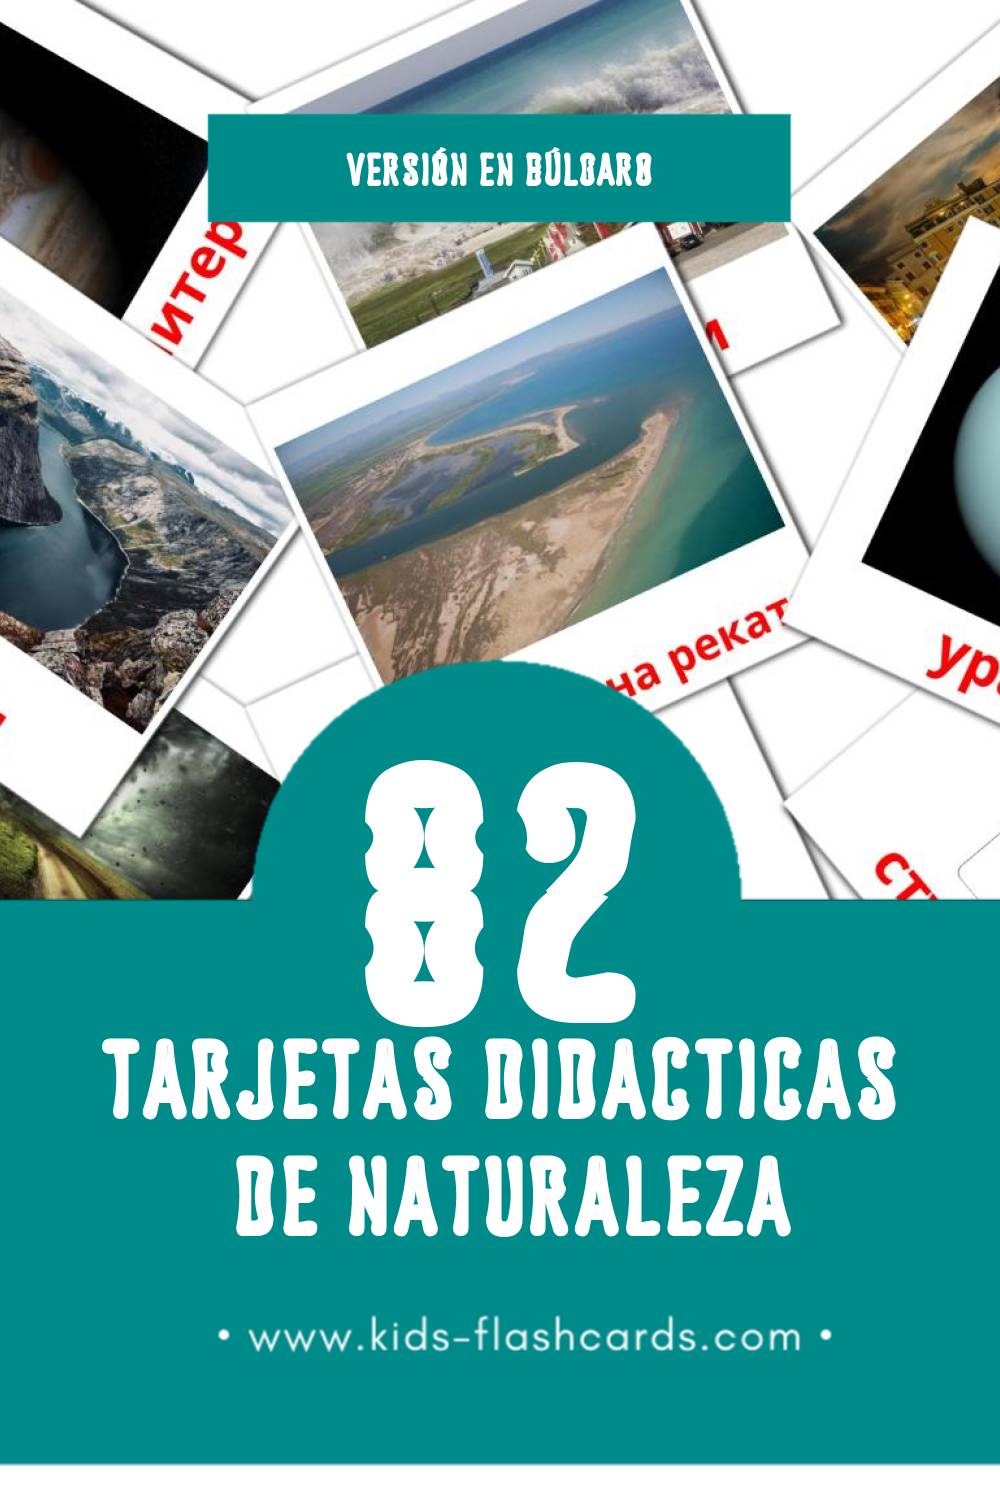 Tarjetas visuales de Природата para niños pequeños (82 tarjetas en Búlgaro)